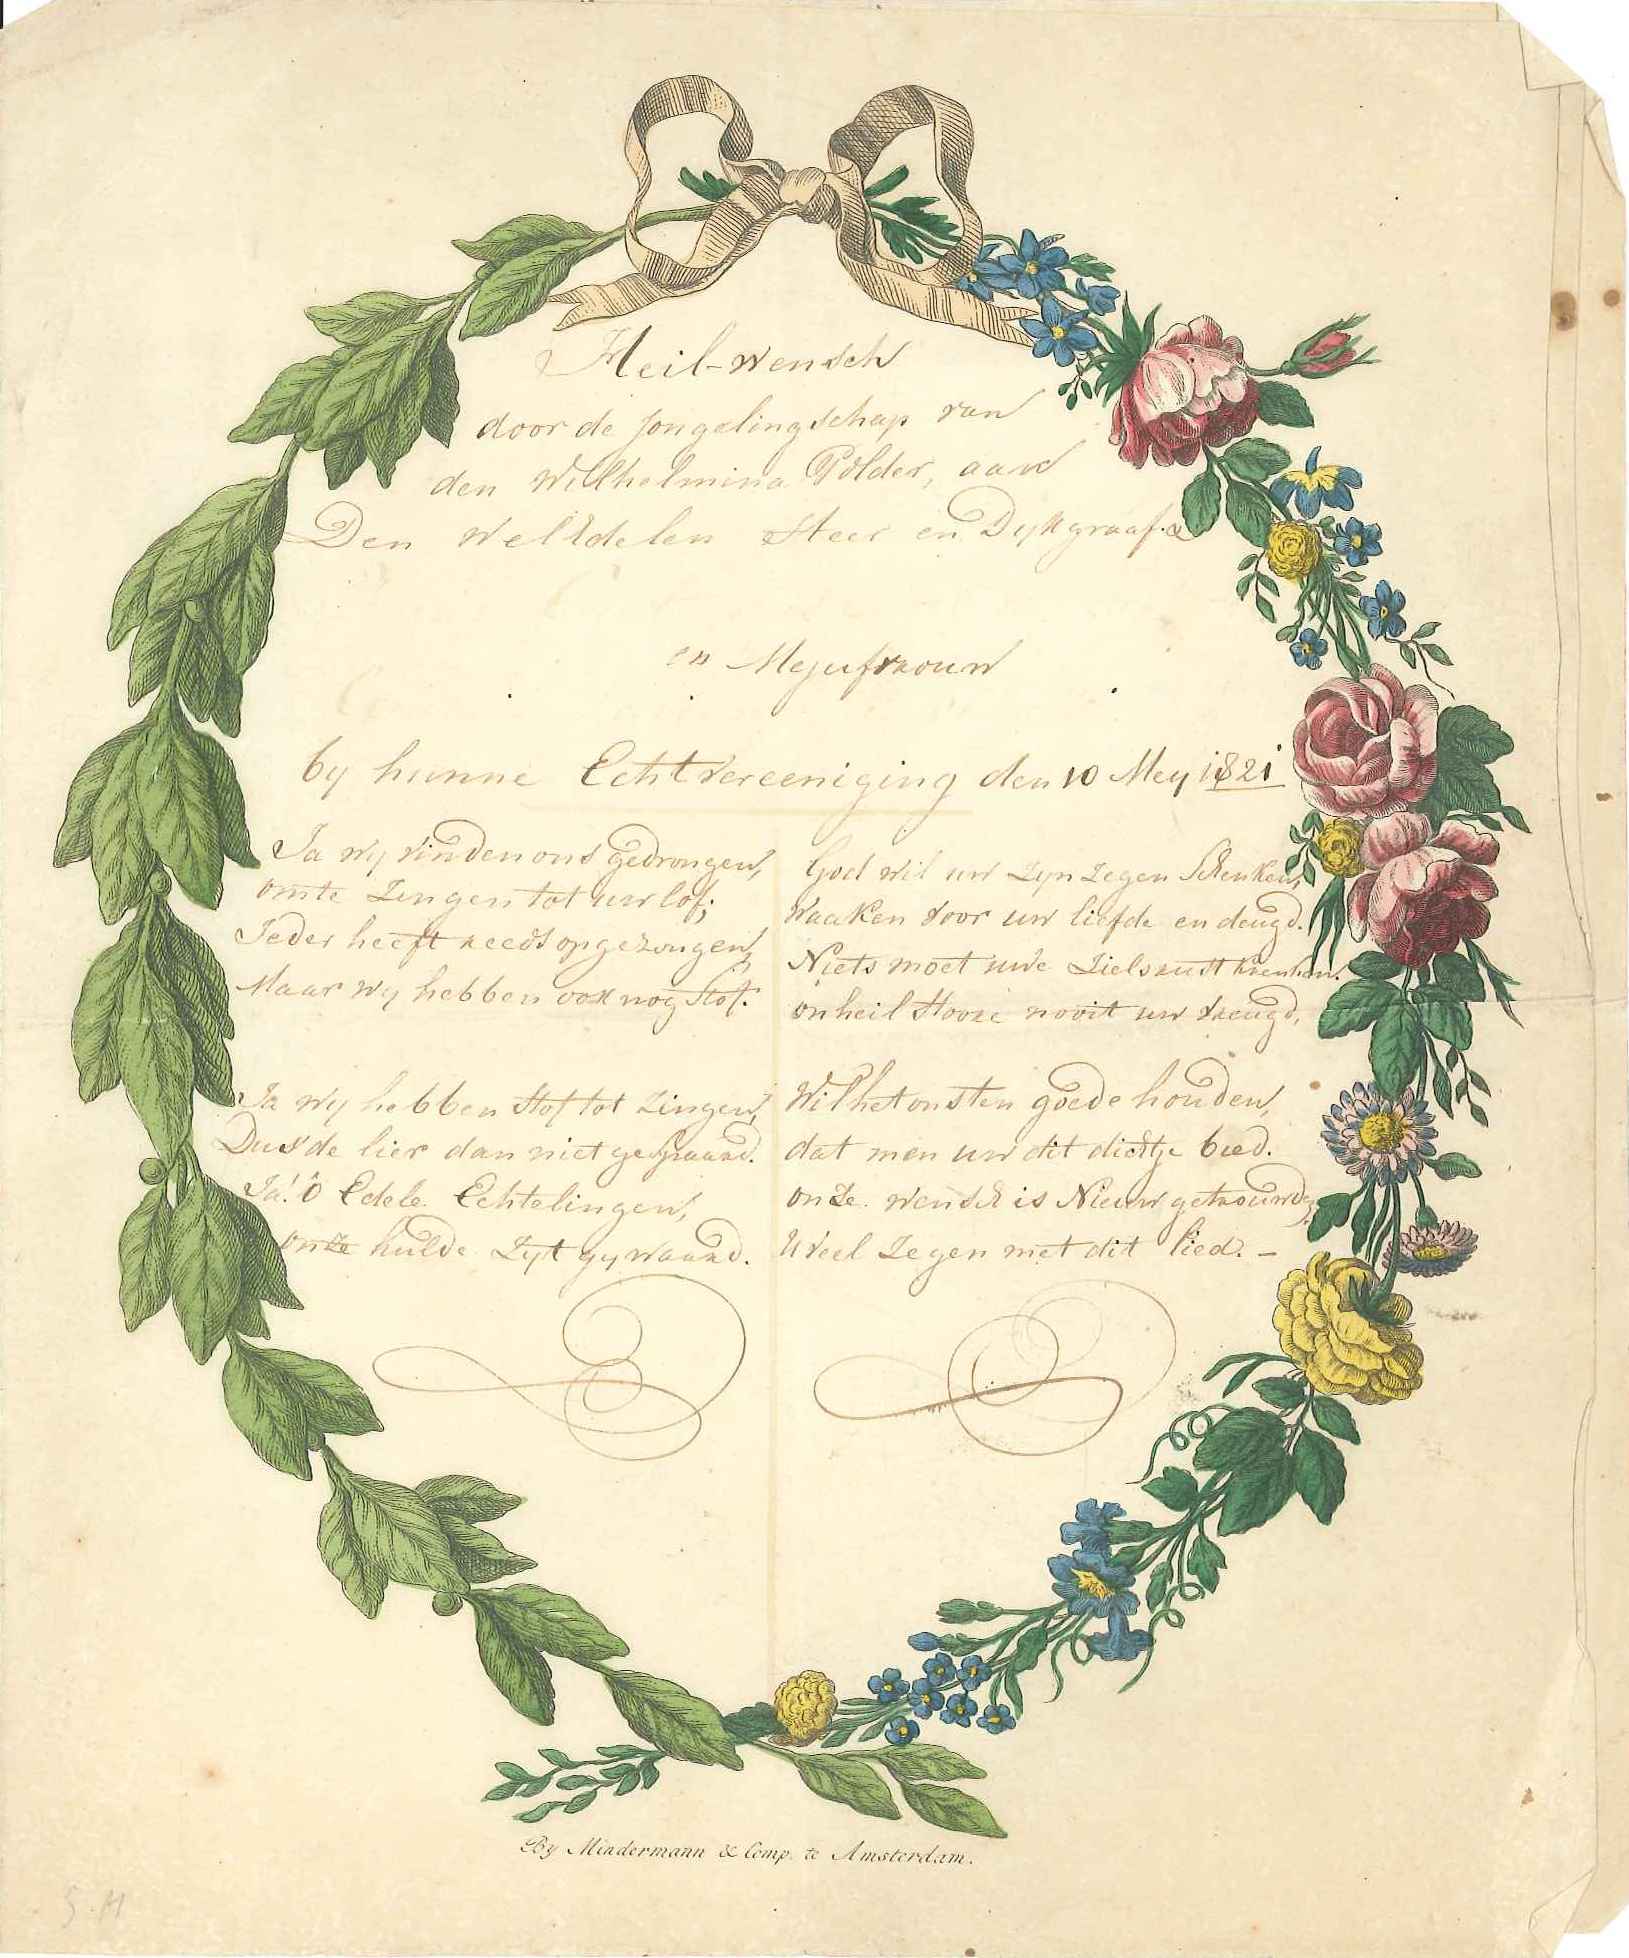 Gelukwens van de jeugd van de Wilhelminapolder op het huwelijk van de dijkgraaf, 1821. GAG.Hsv. inv.nr. 78.